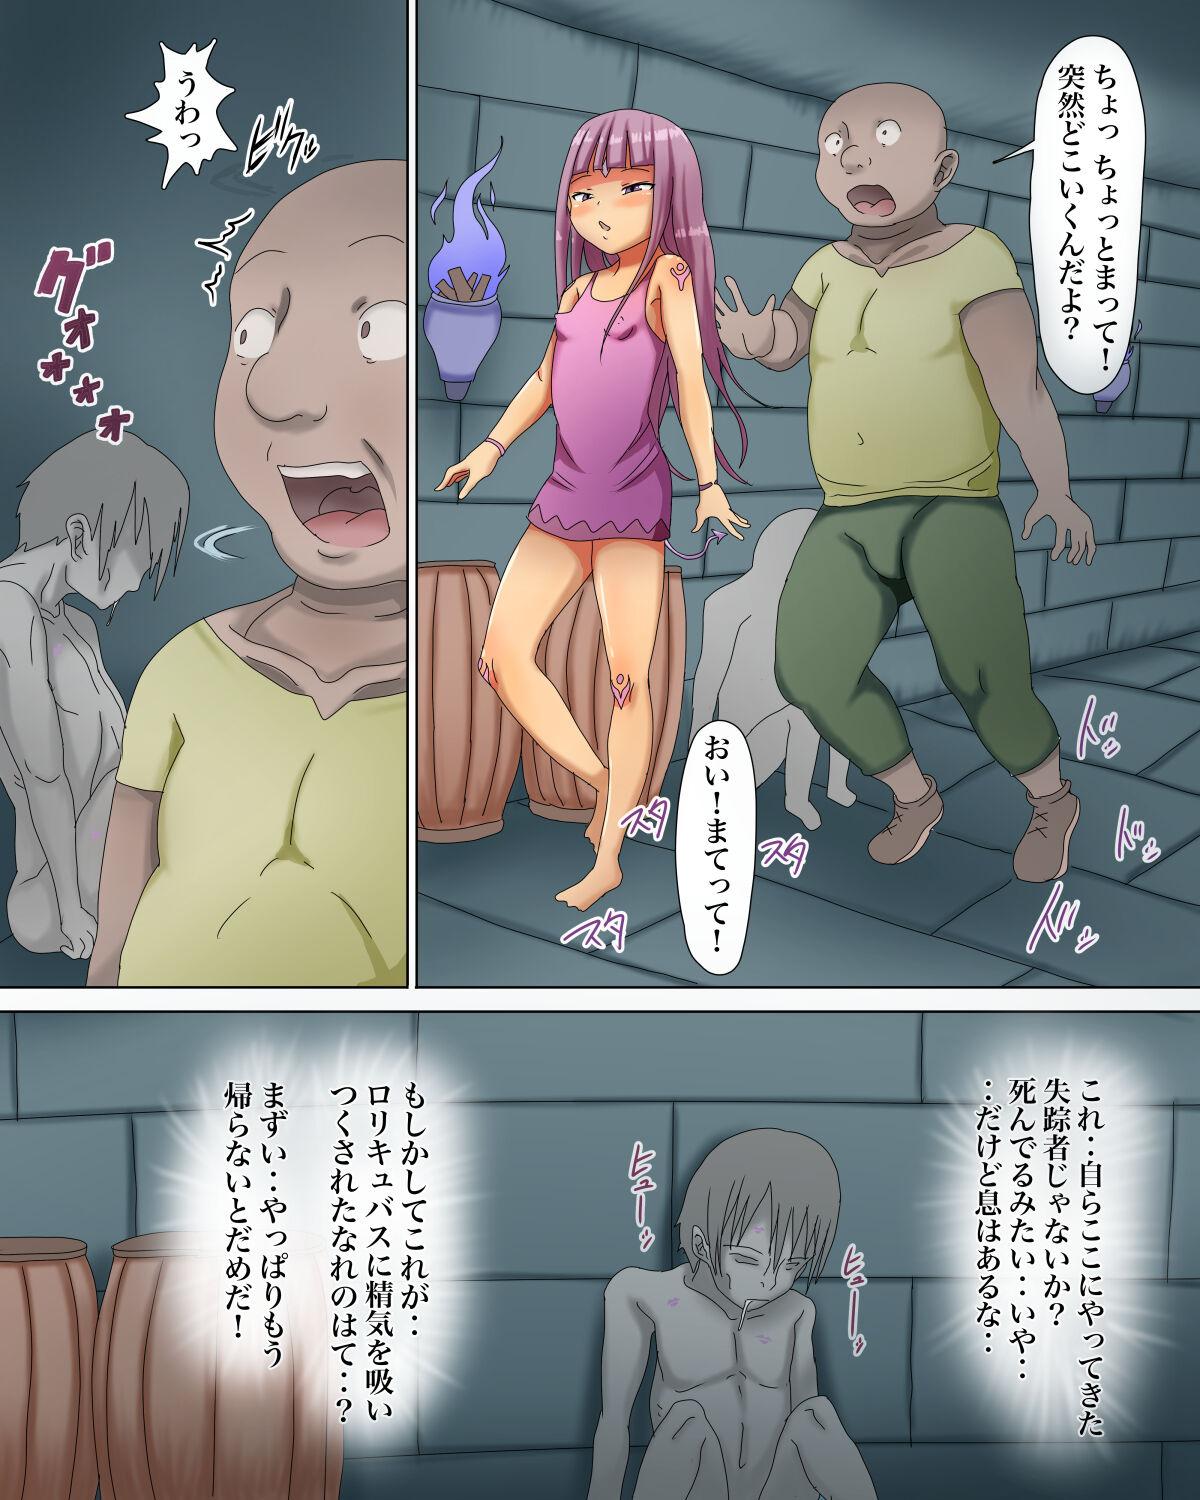 Humiliation Pov Lolicubas 〜 shojo in ma tachi ni sakutori sa re tsudzuke ta otoko no hanashi 〜 - Original Grandma - Page 11